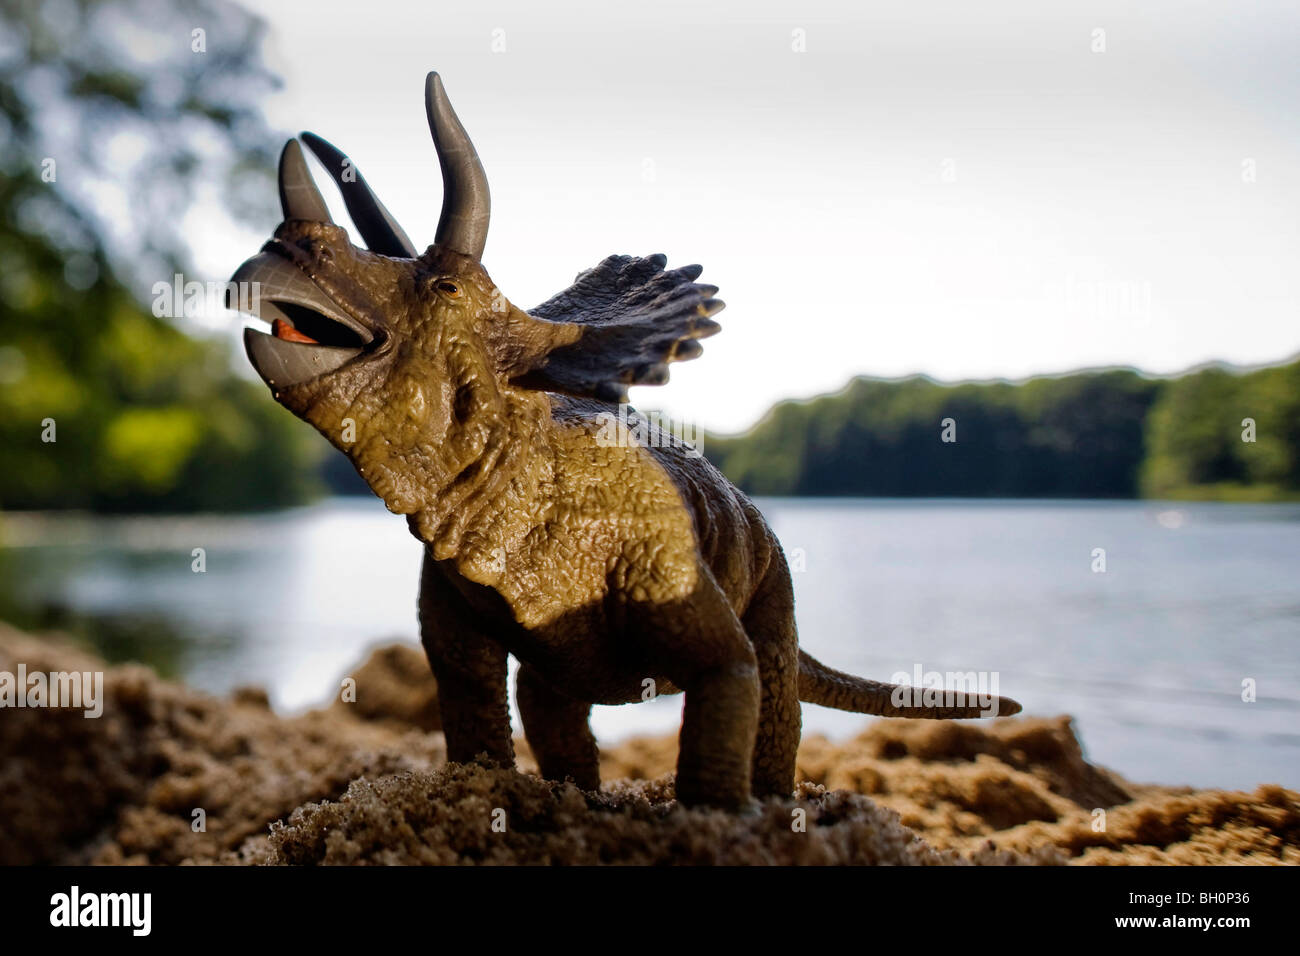 Spielzeug-Triceratops am Ufer eines Sees Stockfoto